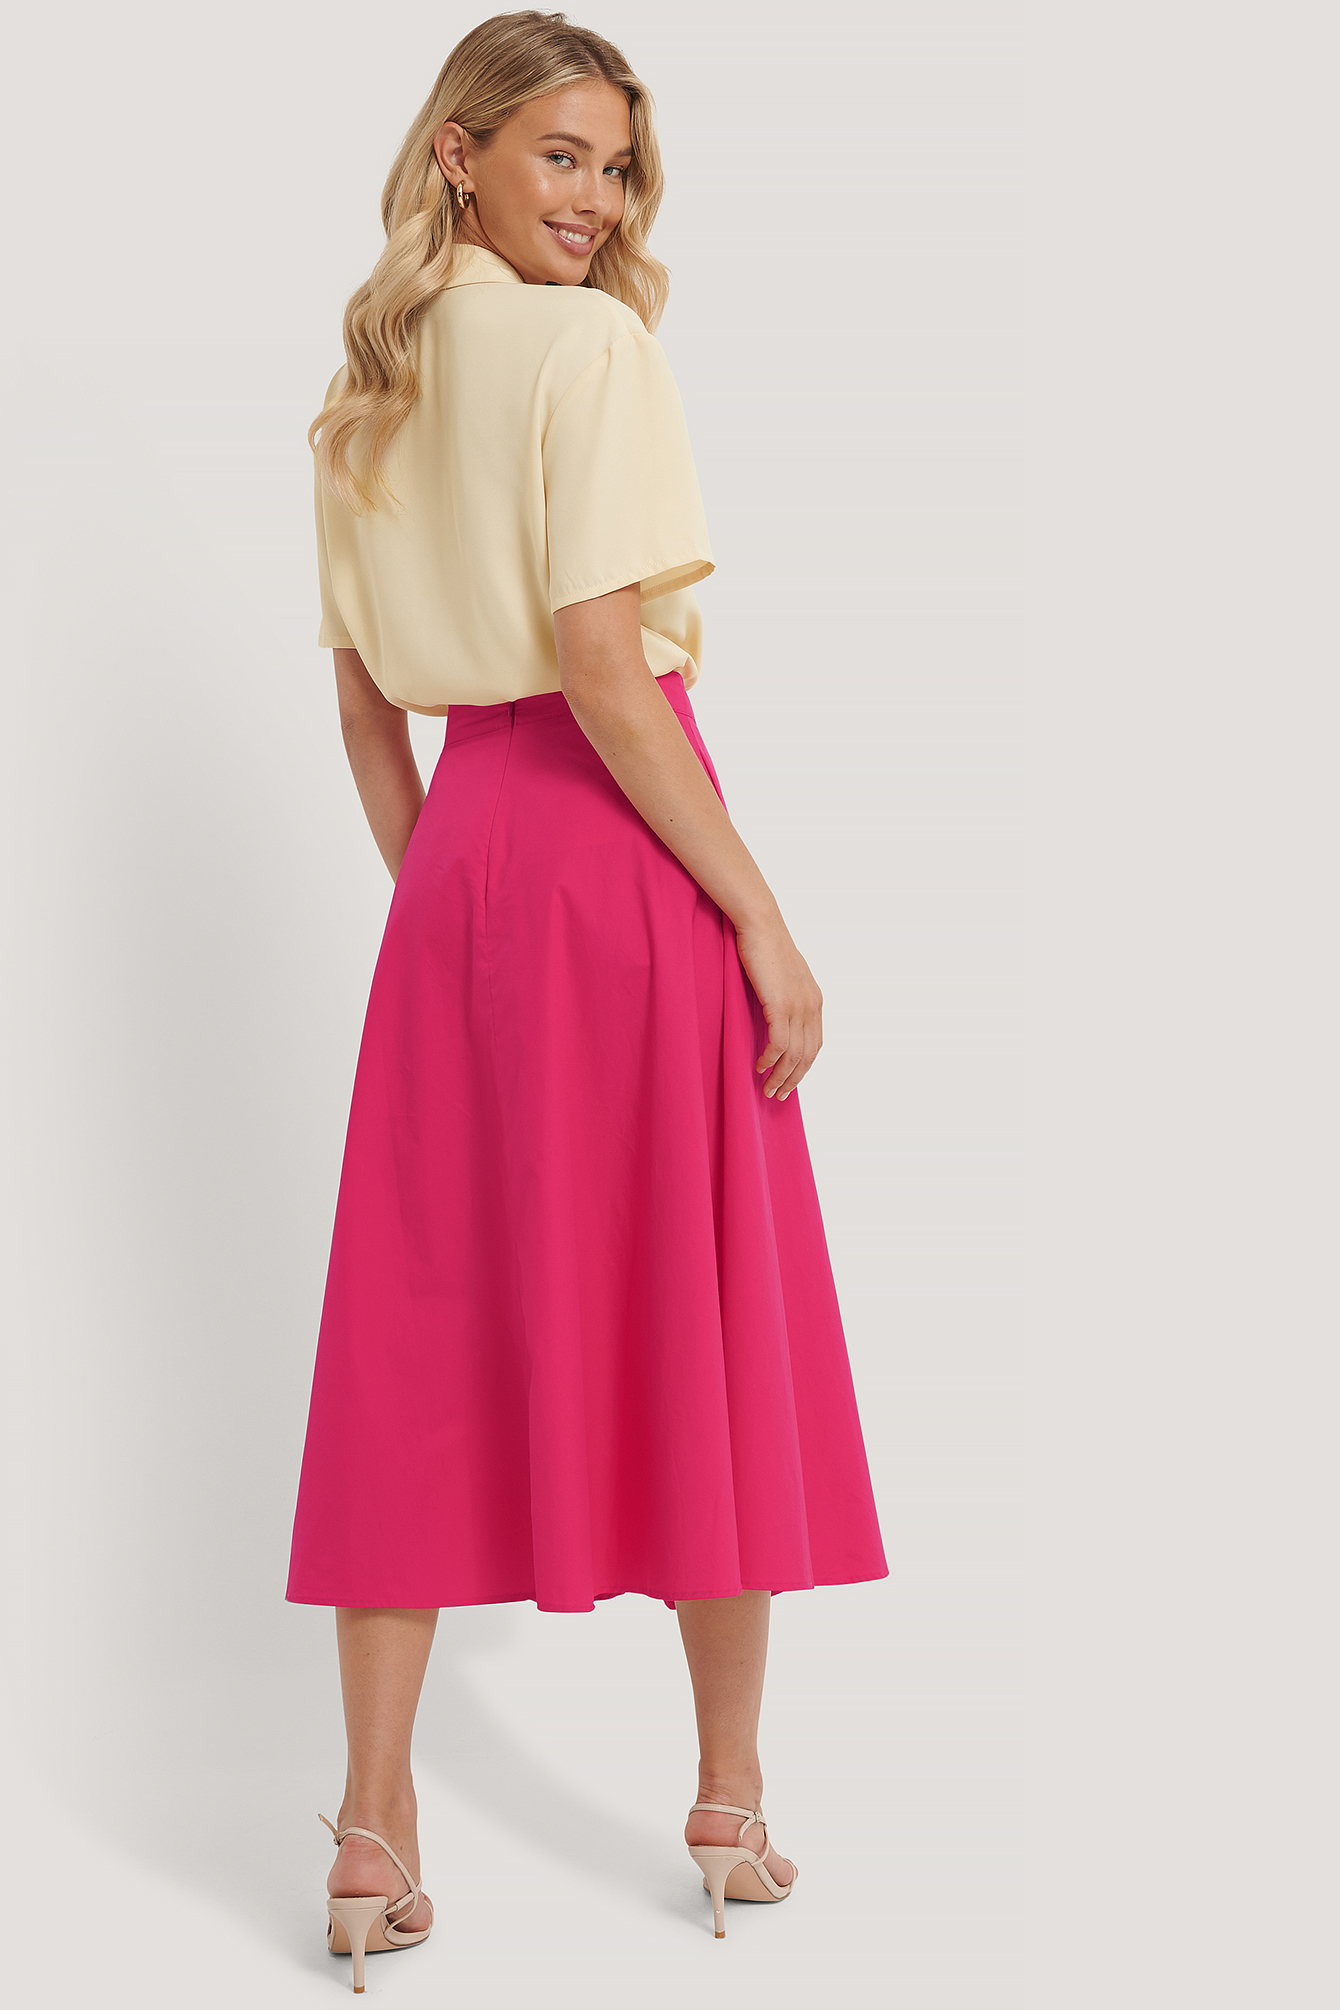 Fuchsia Flowy Skirt